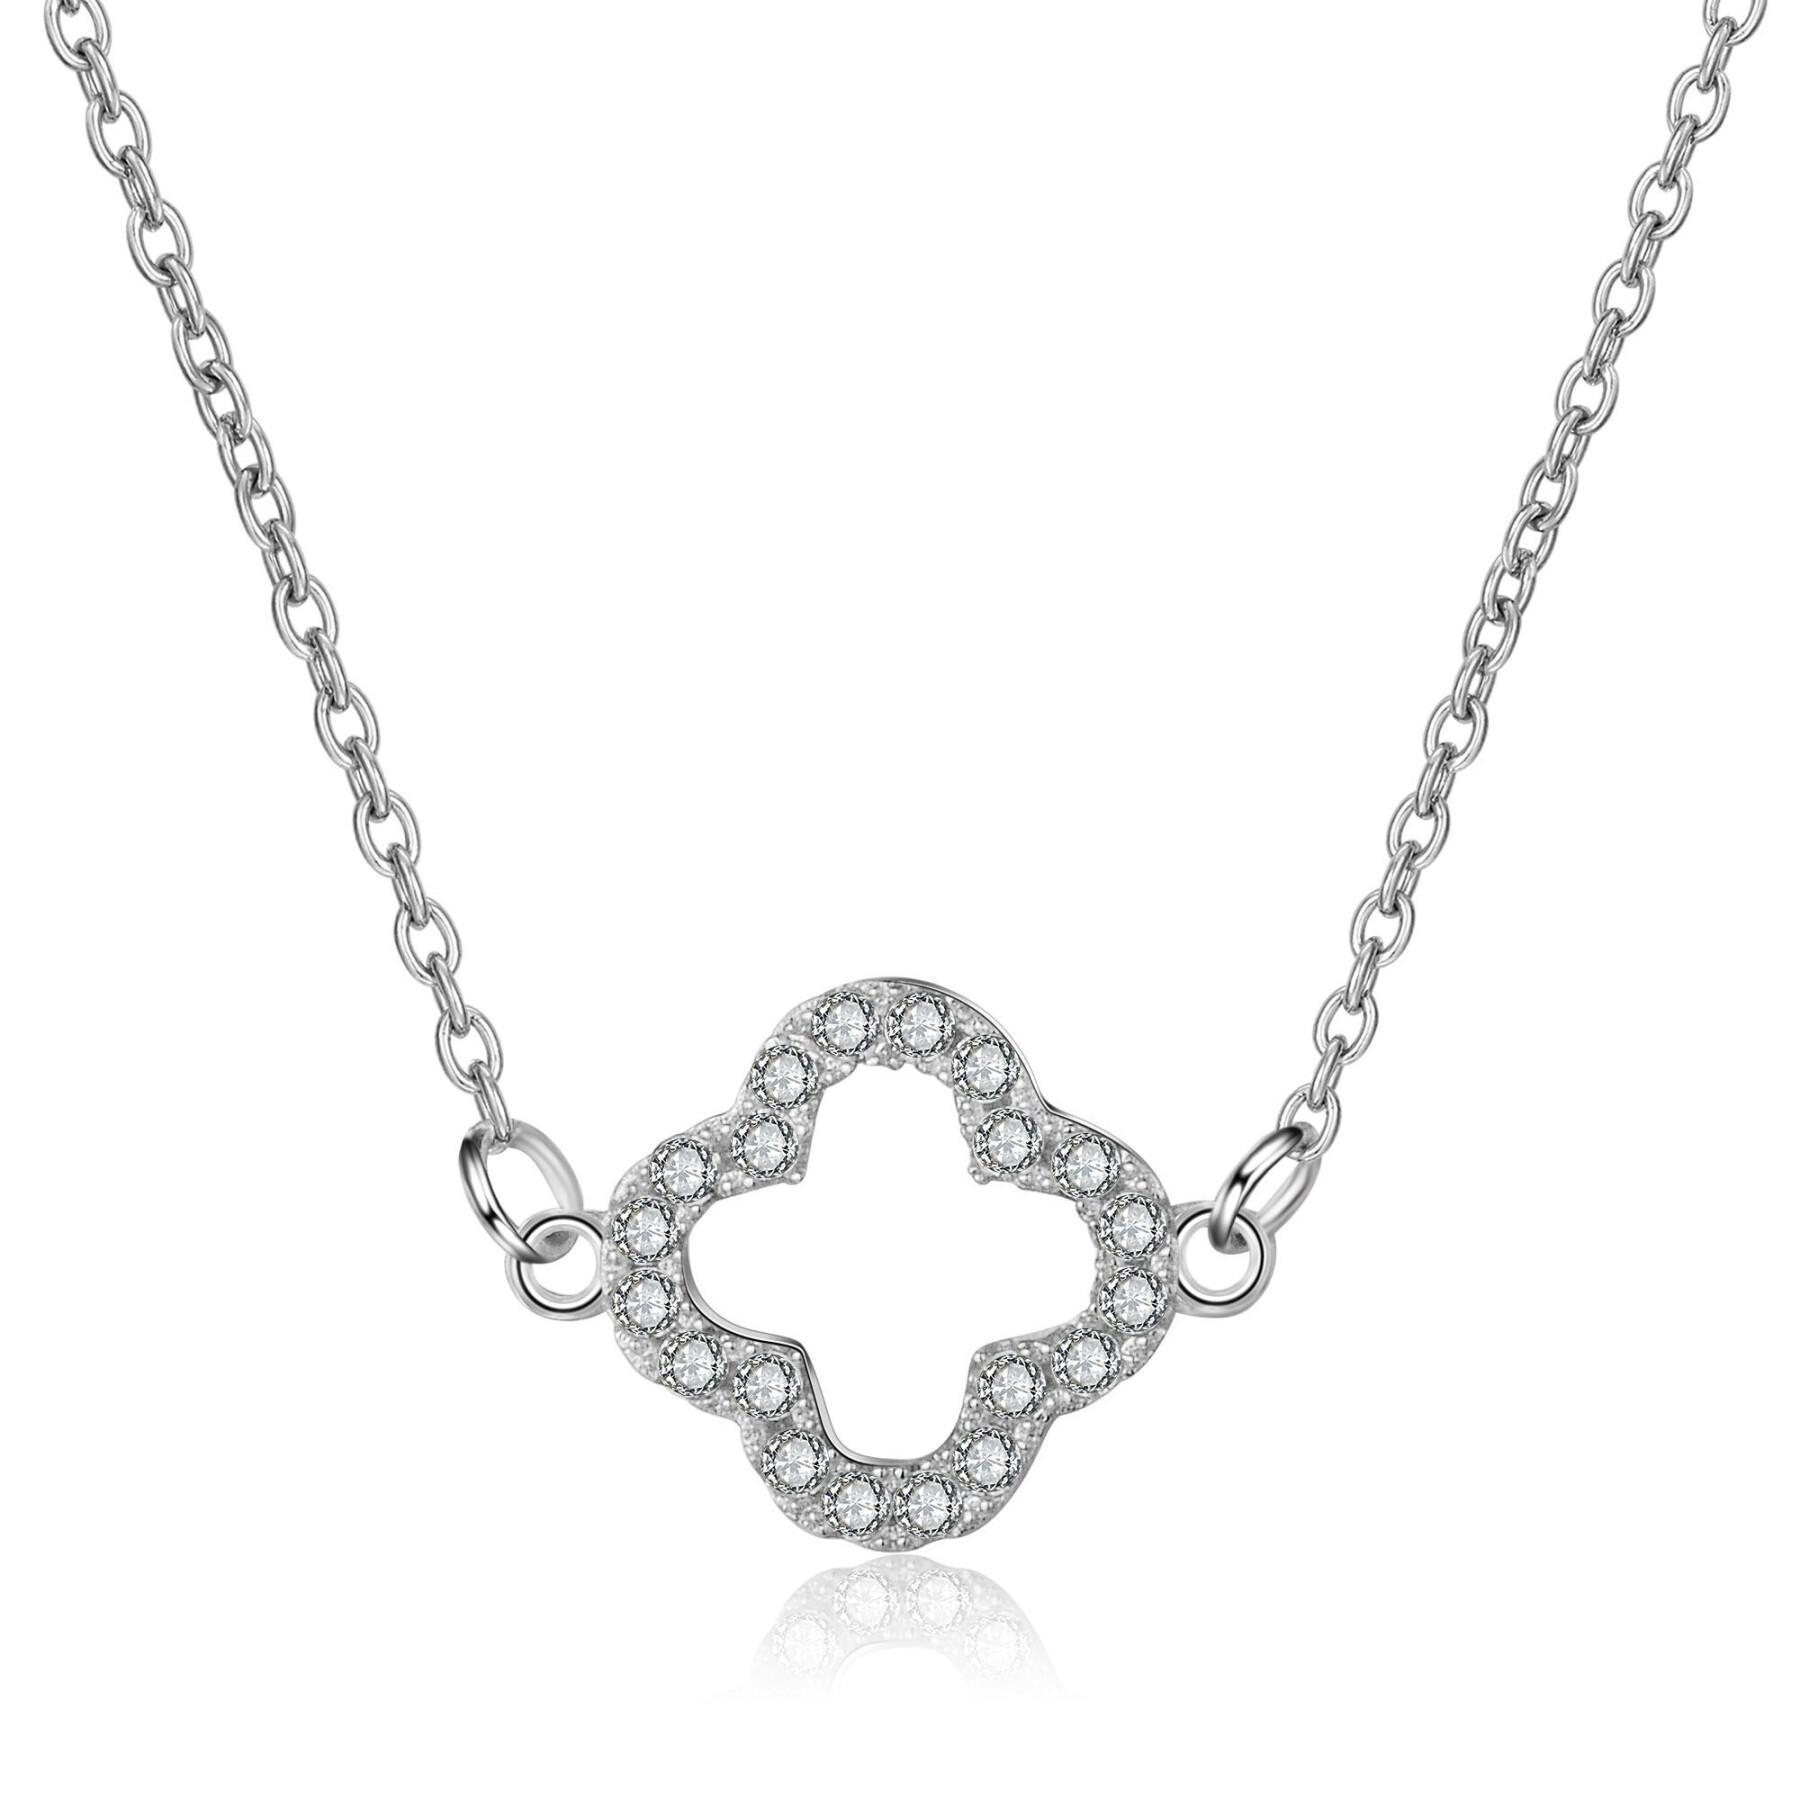 Women's necklace Ailoria Lara